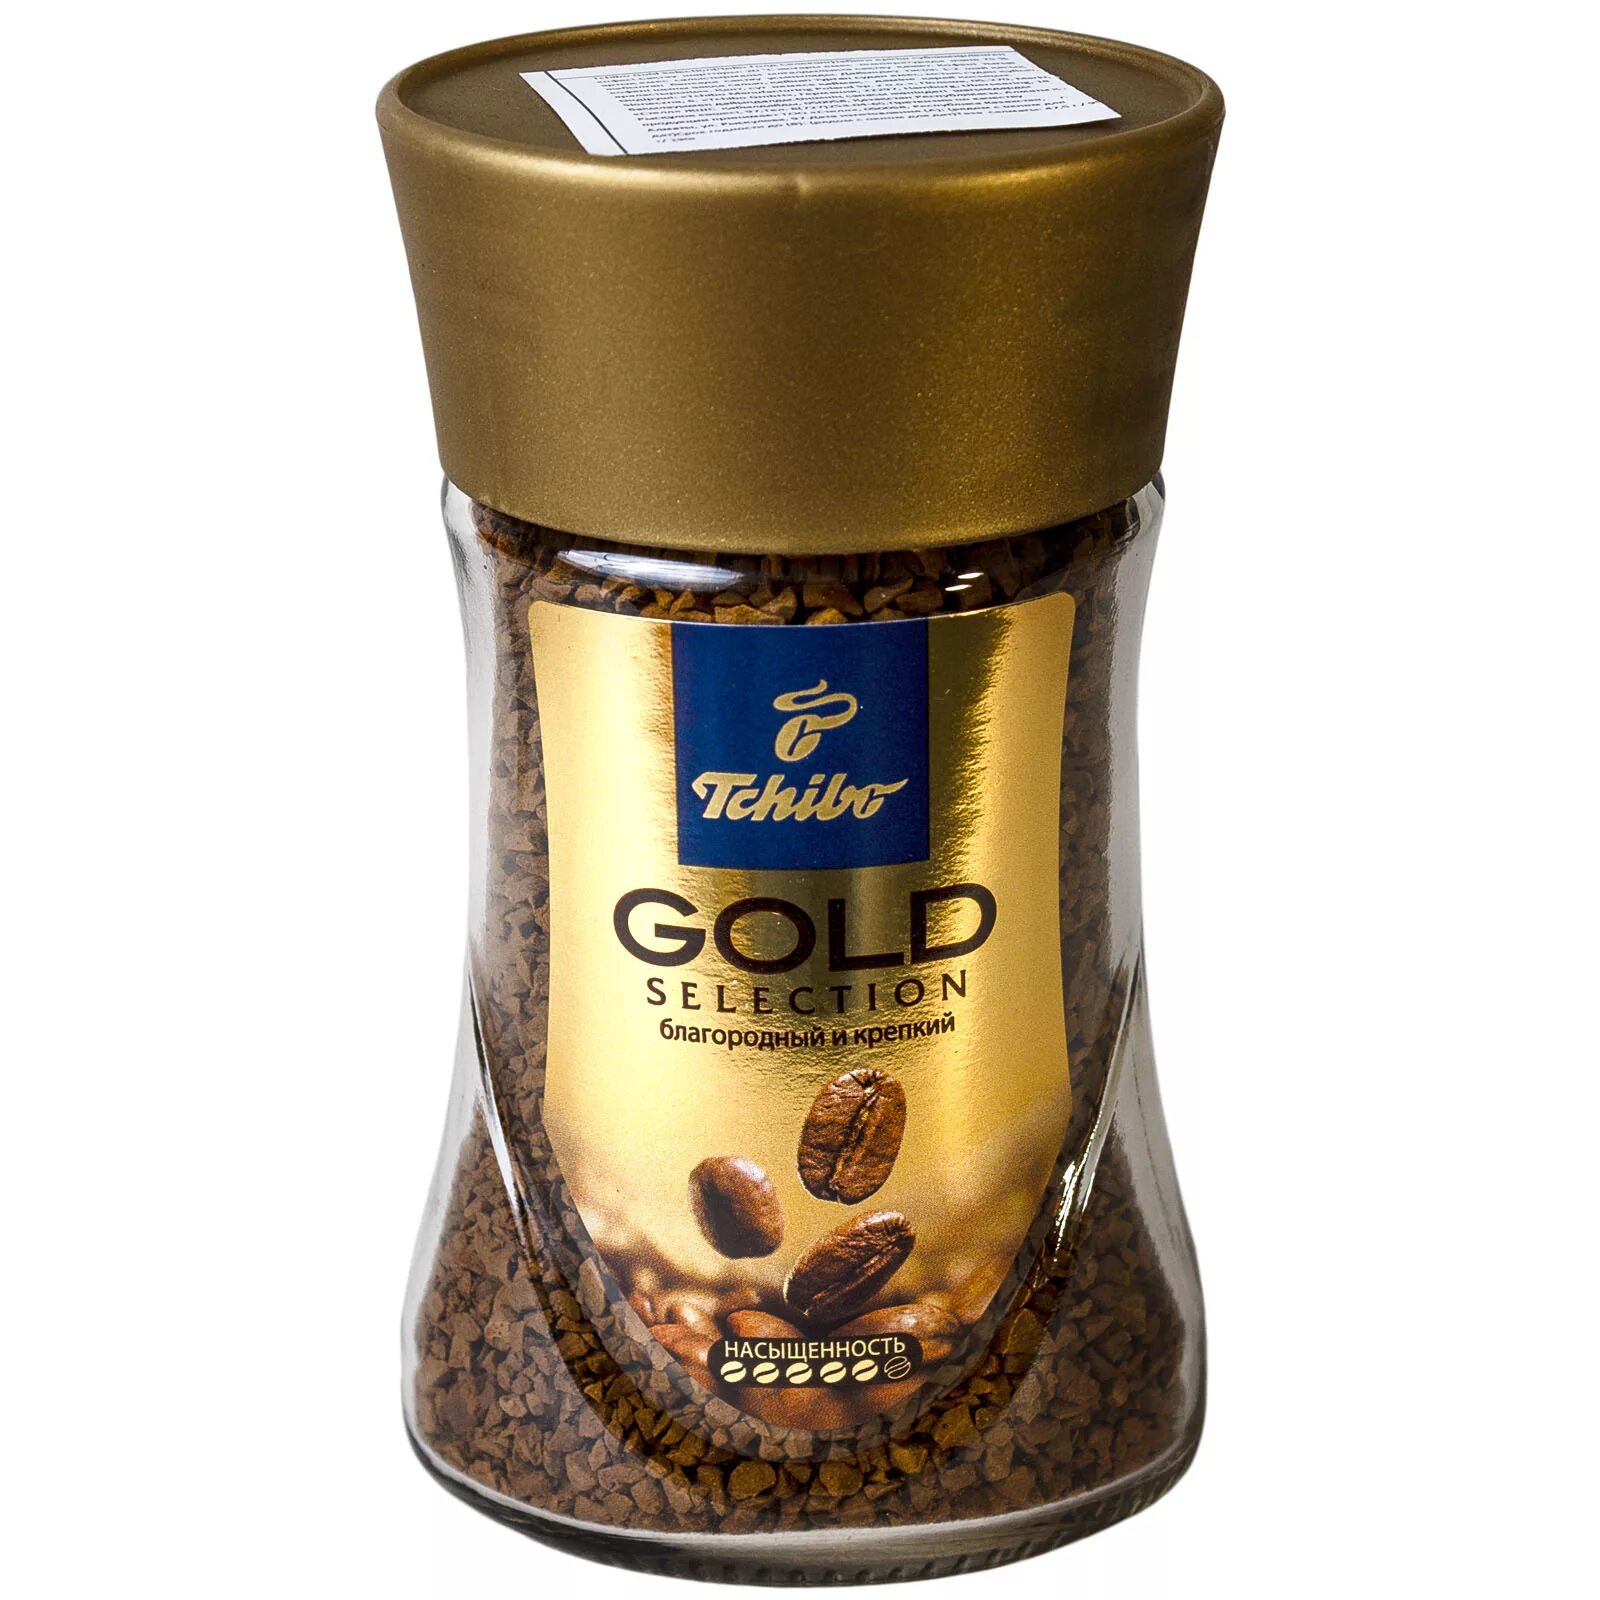 Кофе Tchibo Exclusive 95гр с/б. Чибо эксклюзив 95гр (6шт) (только полной упаковкой). Кофе Tchibo Exclusive 47.5гр с/б. Кофе Tchibo Gold.